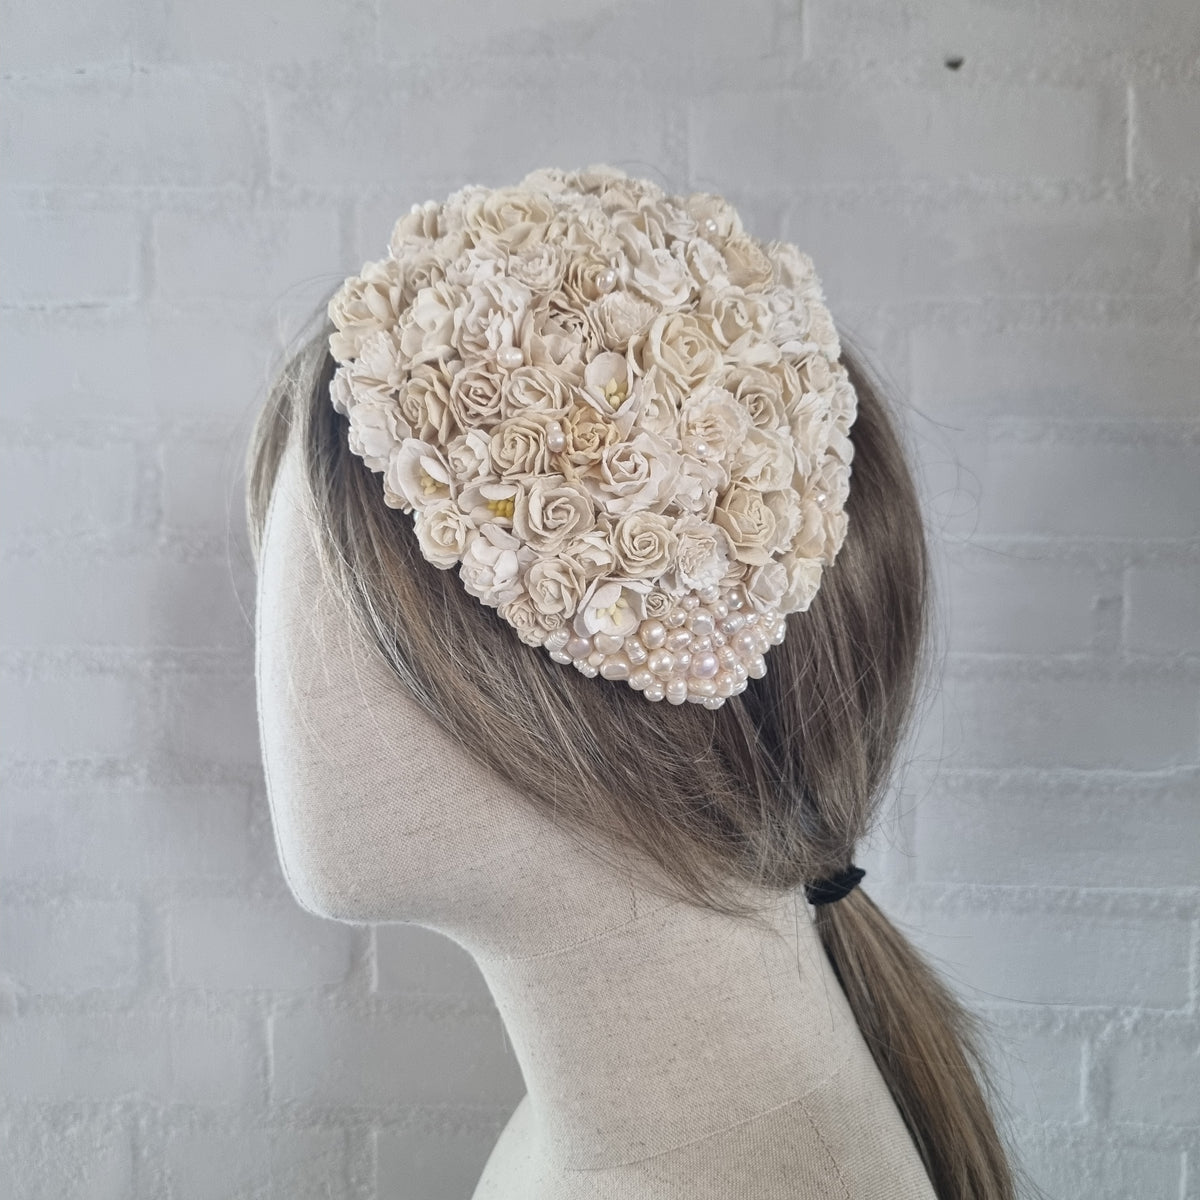 Hårpynt til bryllup - Håndlavet headpiece til brud med hvide blomster og perler - Hårpynt med blomster og perler til bryllup, konfirmation og fest